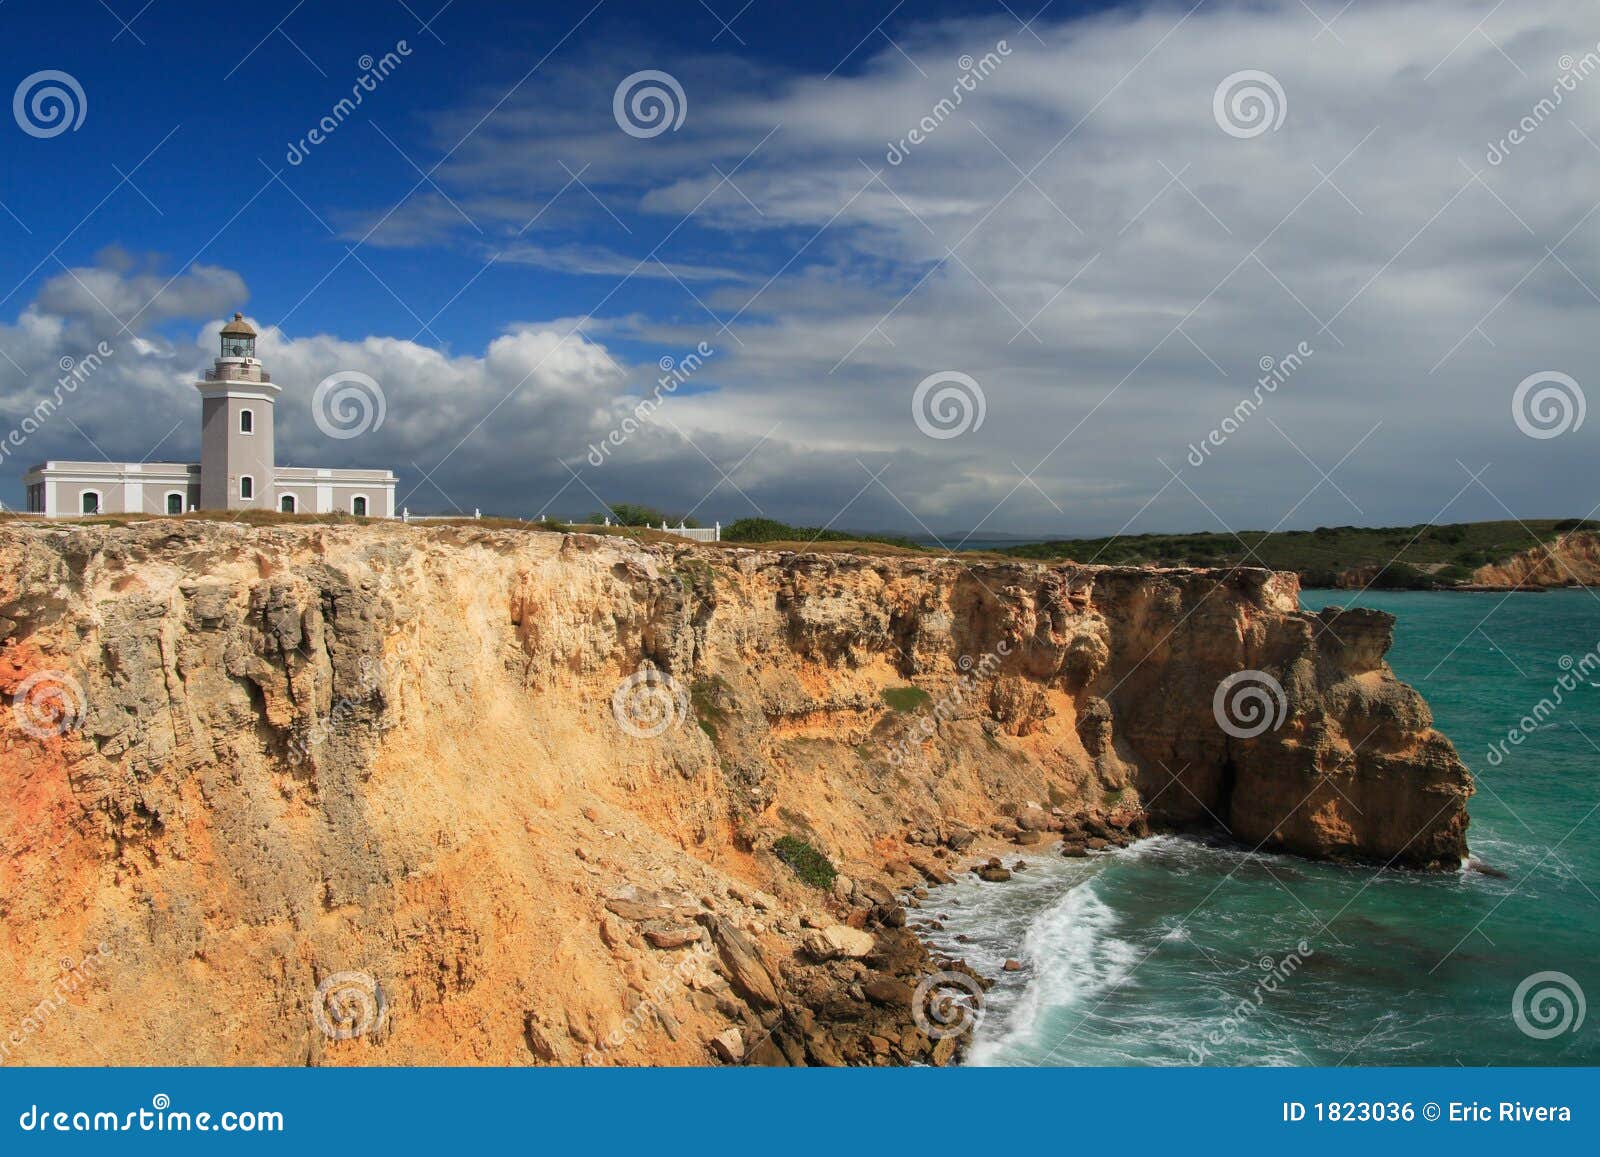 los morrillos cliff in cabo rojo, puerto rico